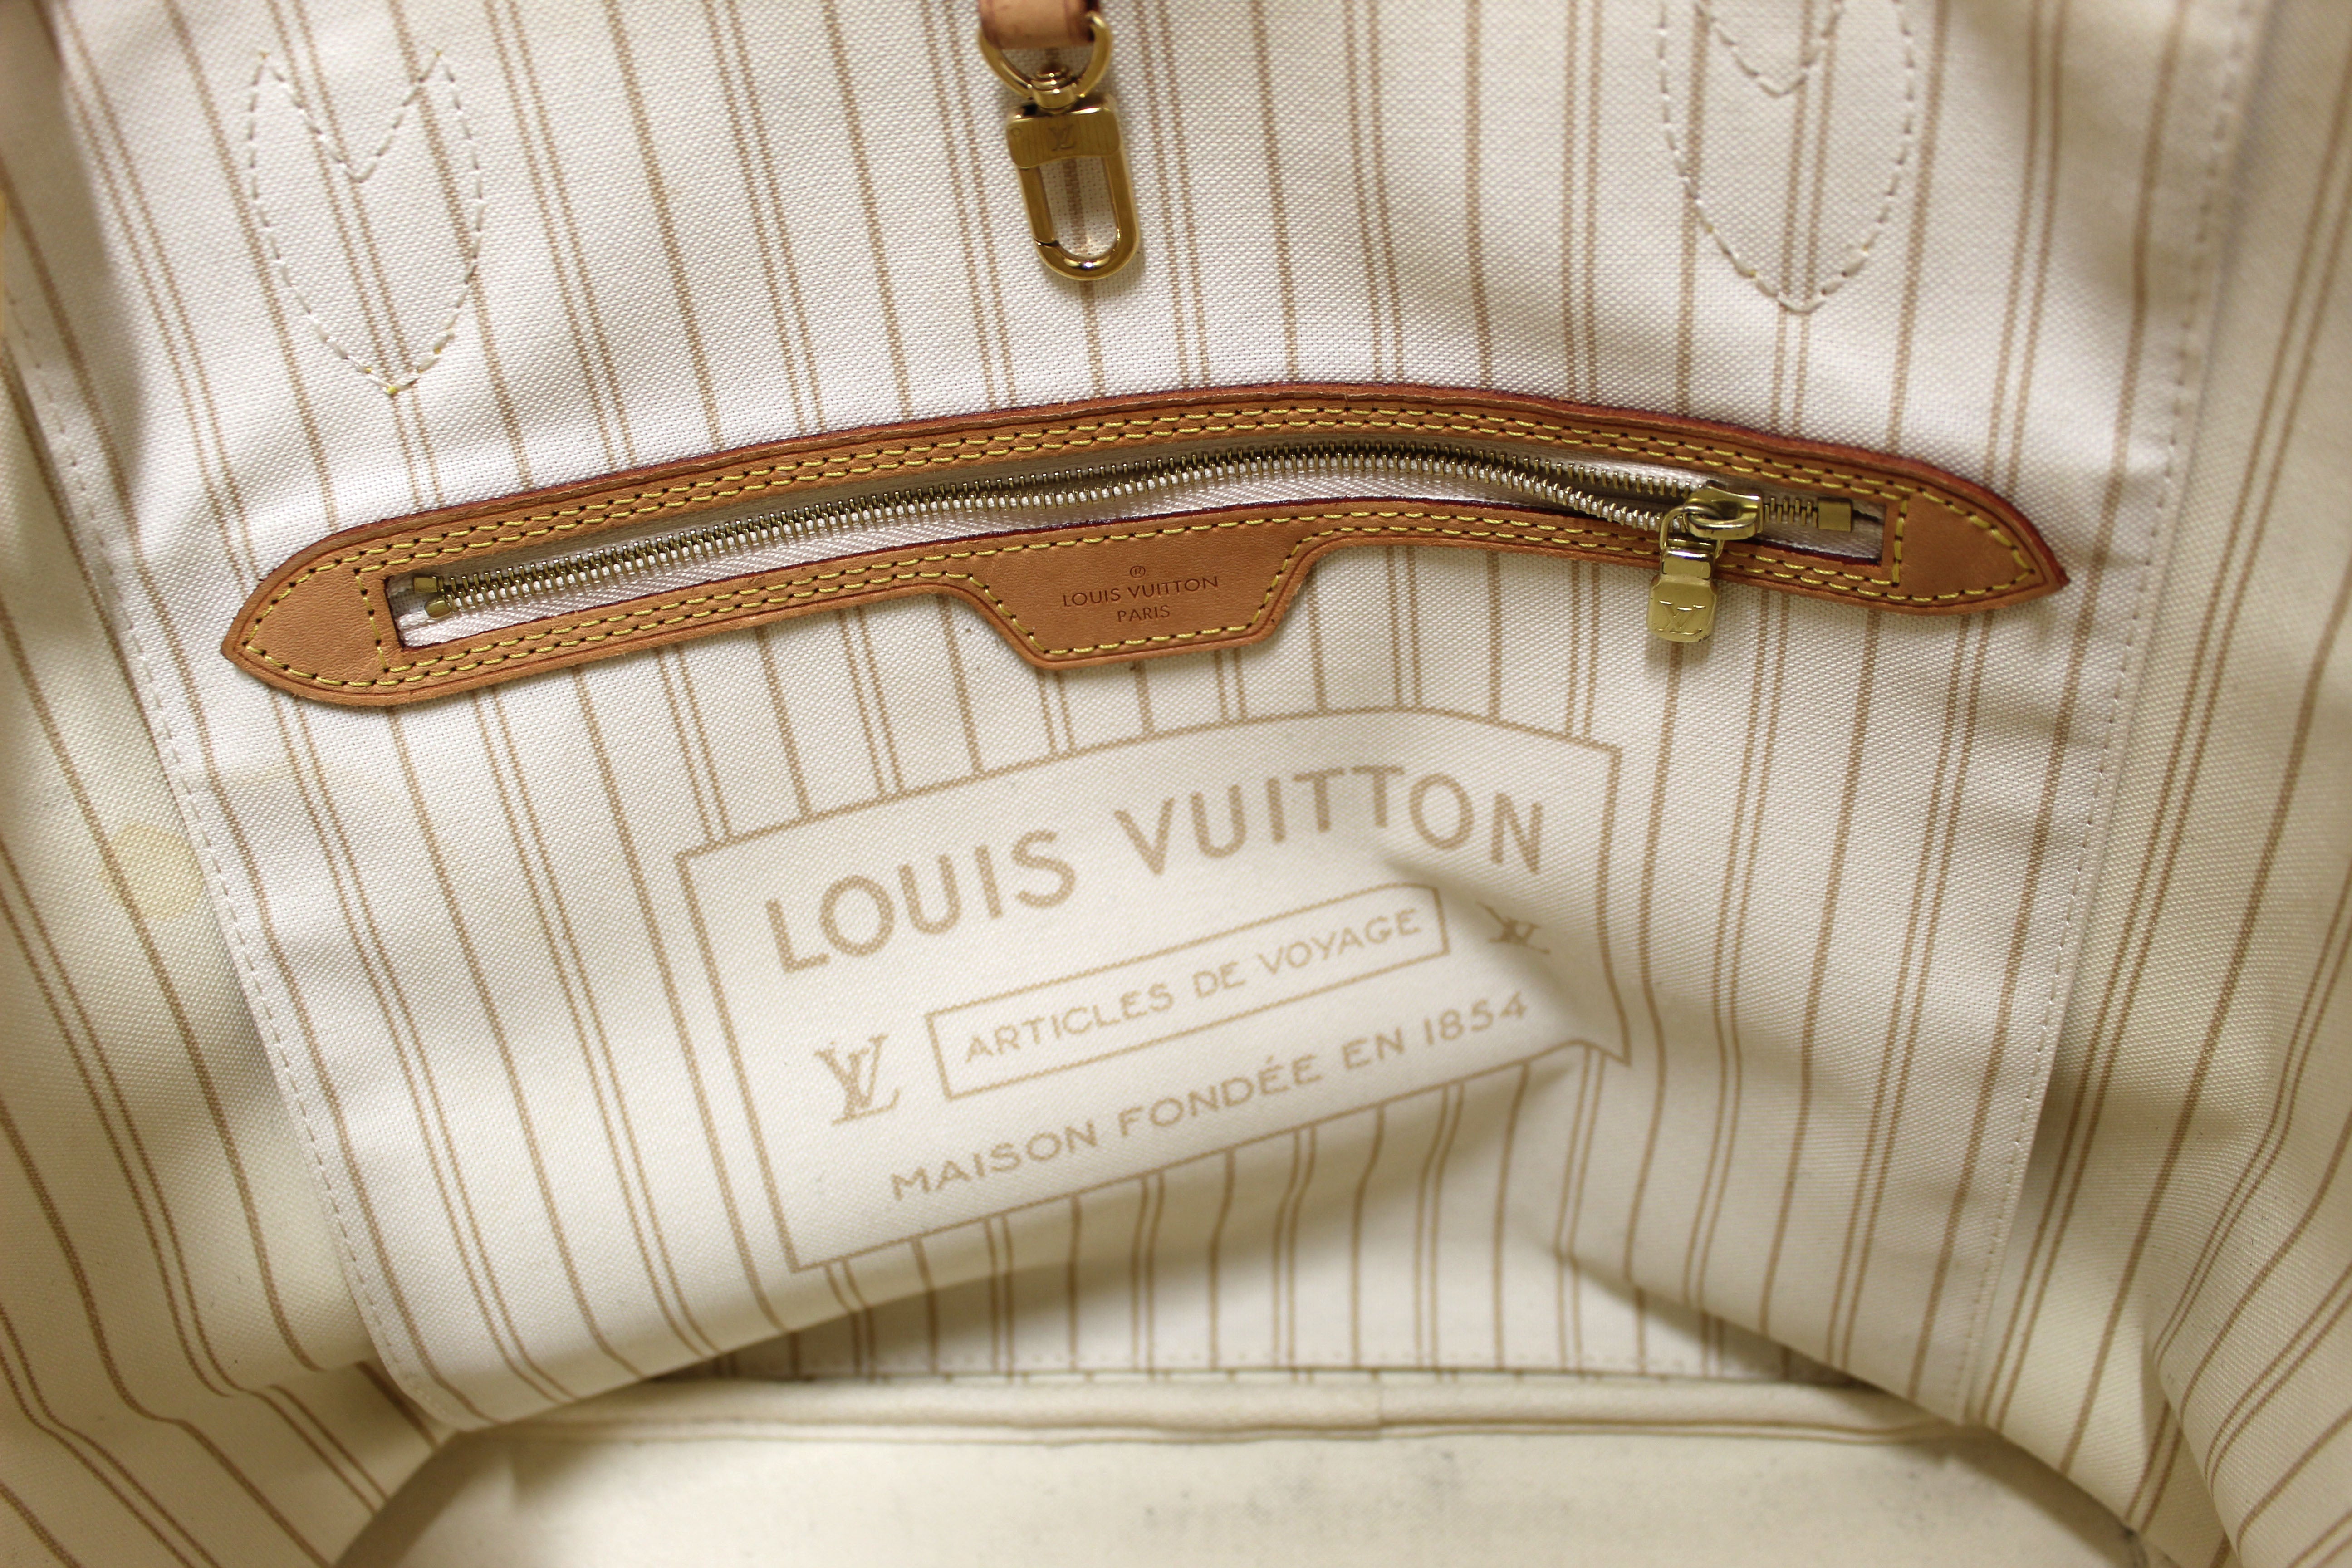 Louis Vuitton Articles De Voyage Cabas GM Shoulder Bag